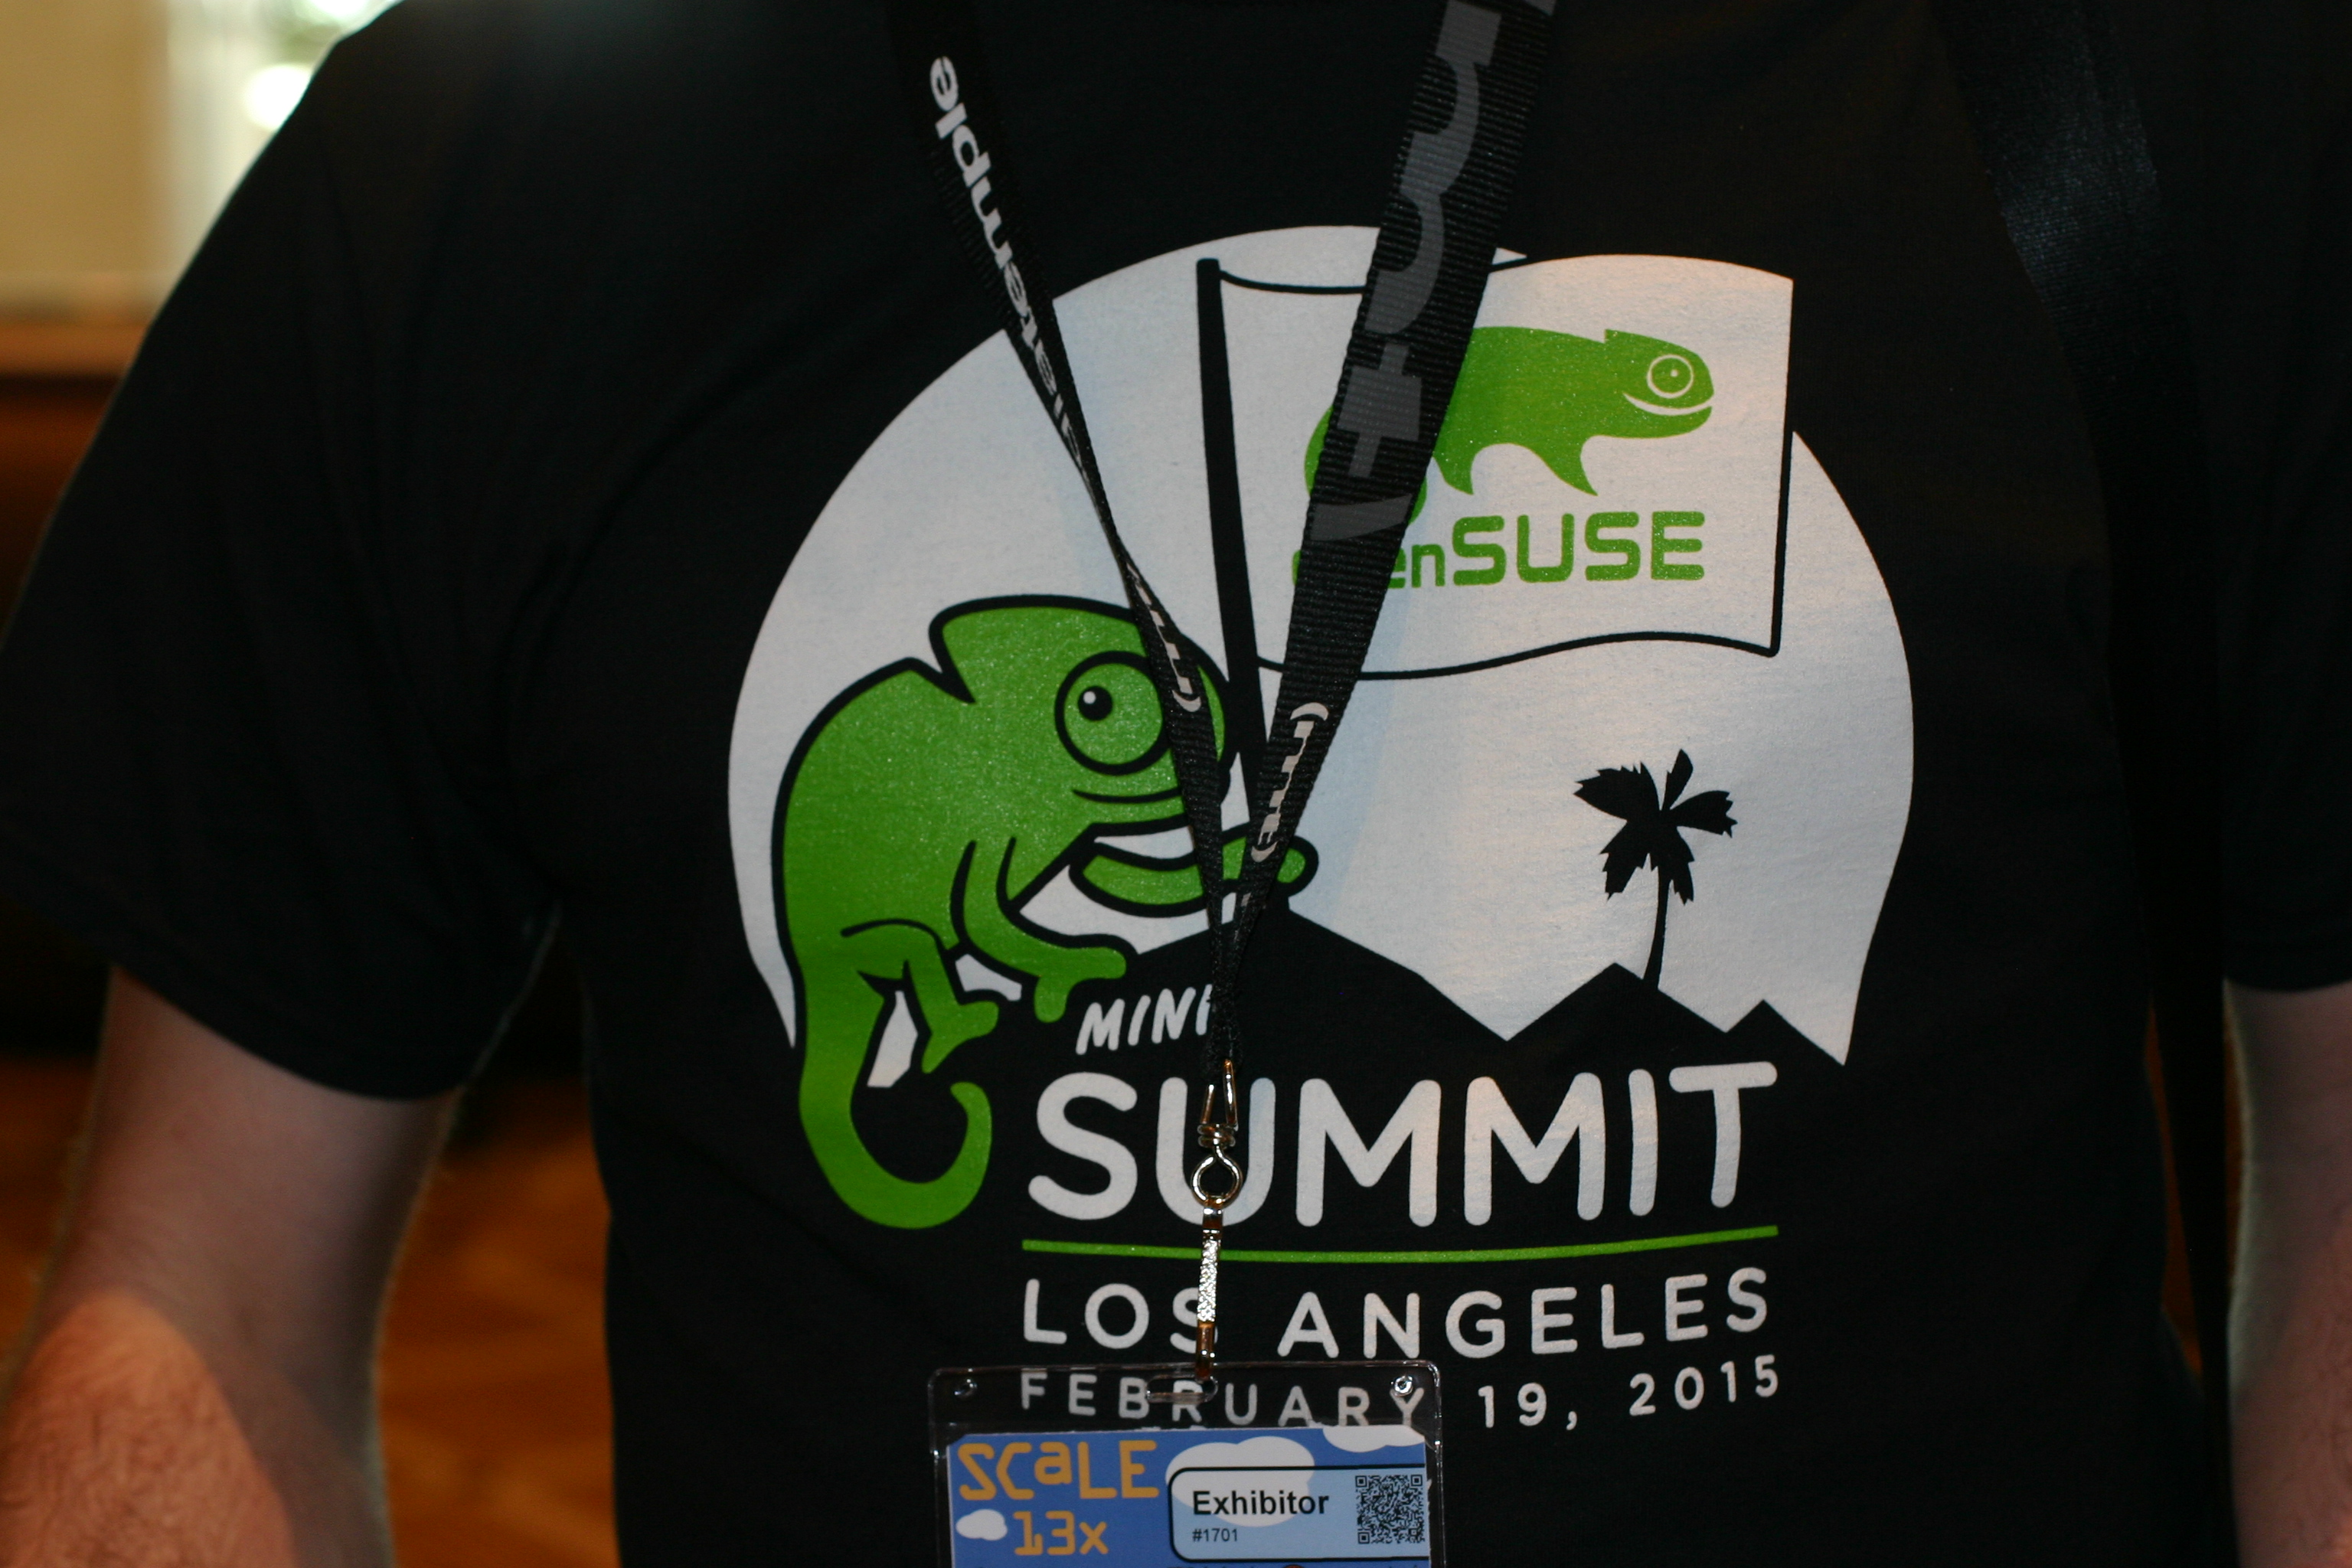 openSUSE miniSummit T-shirt